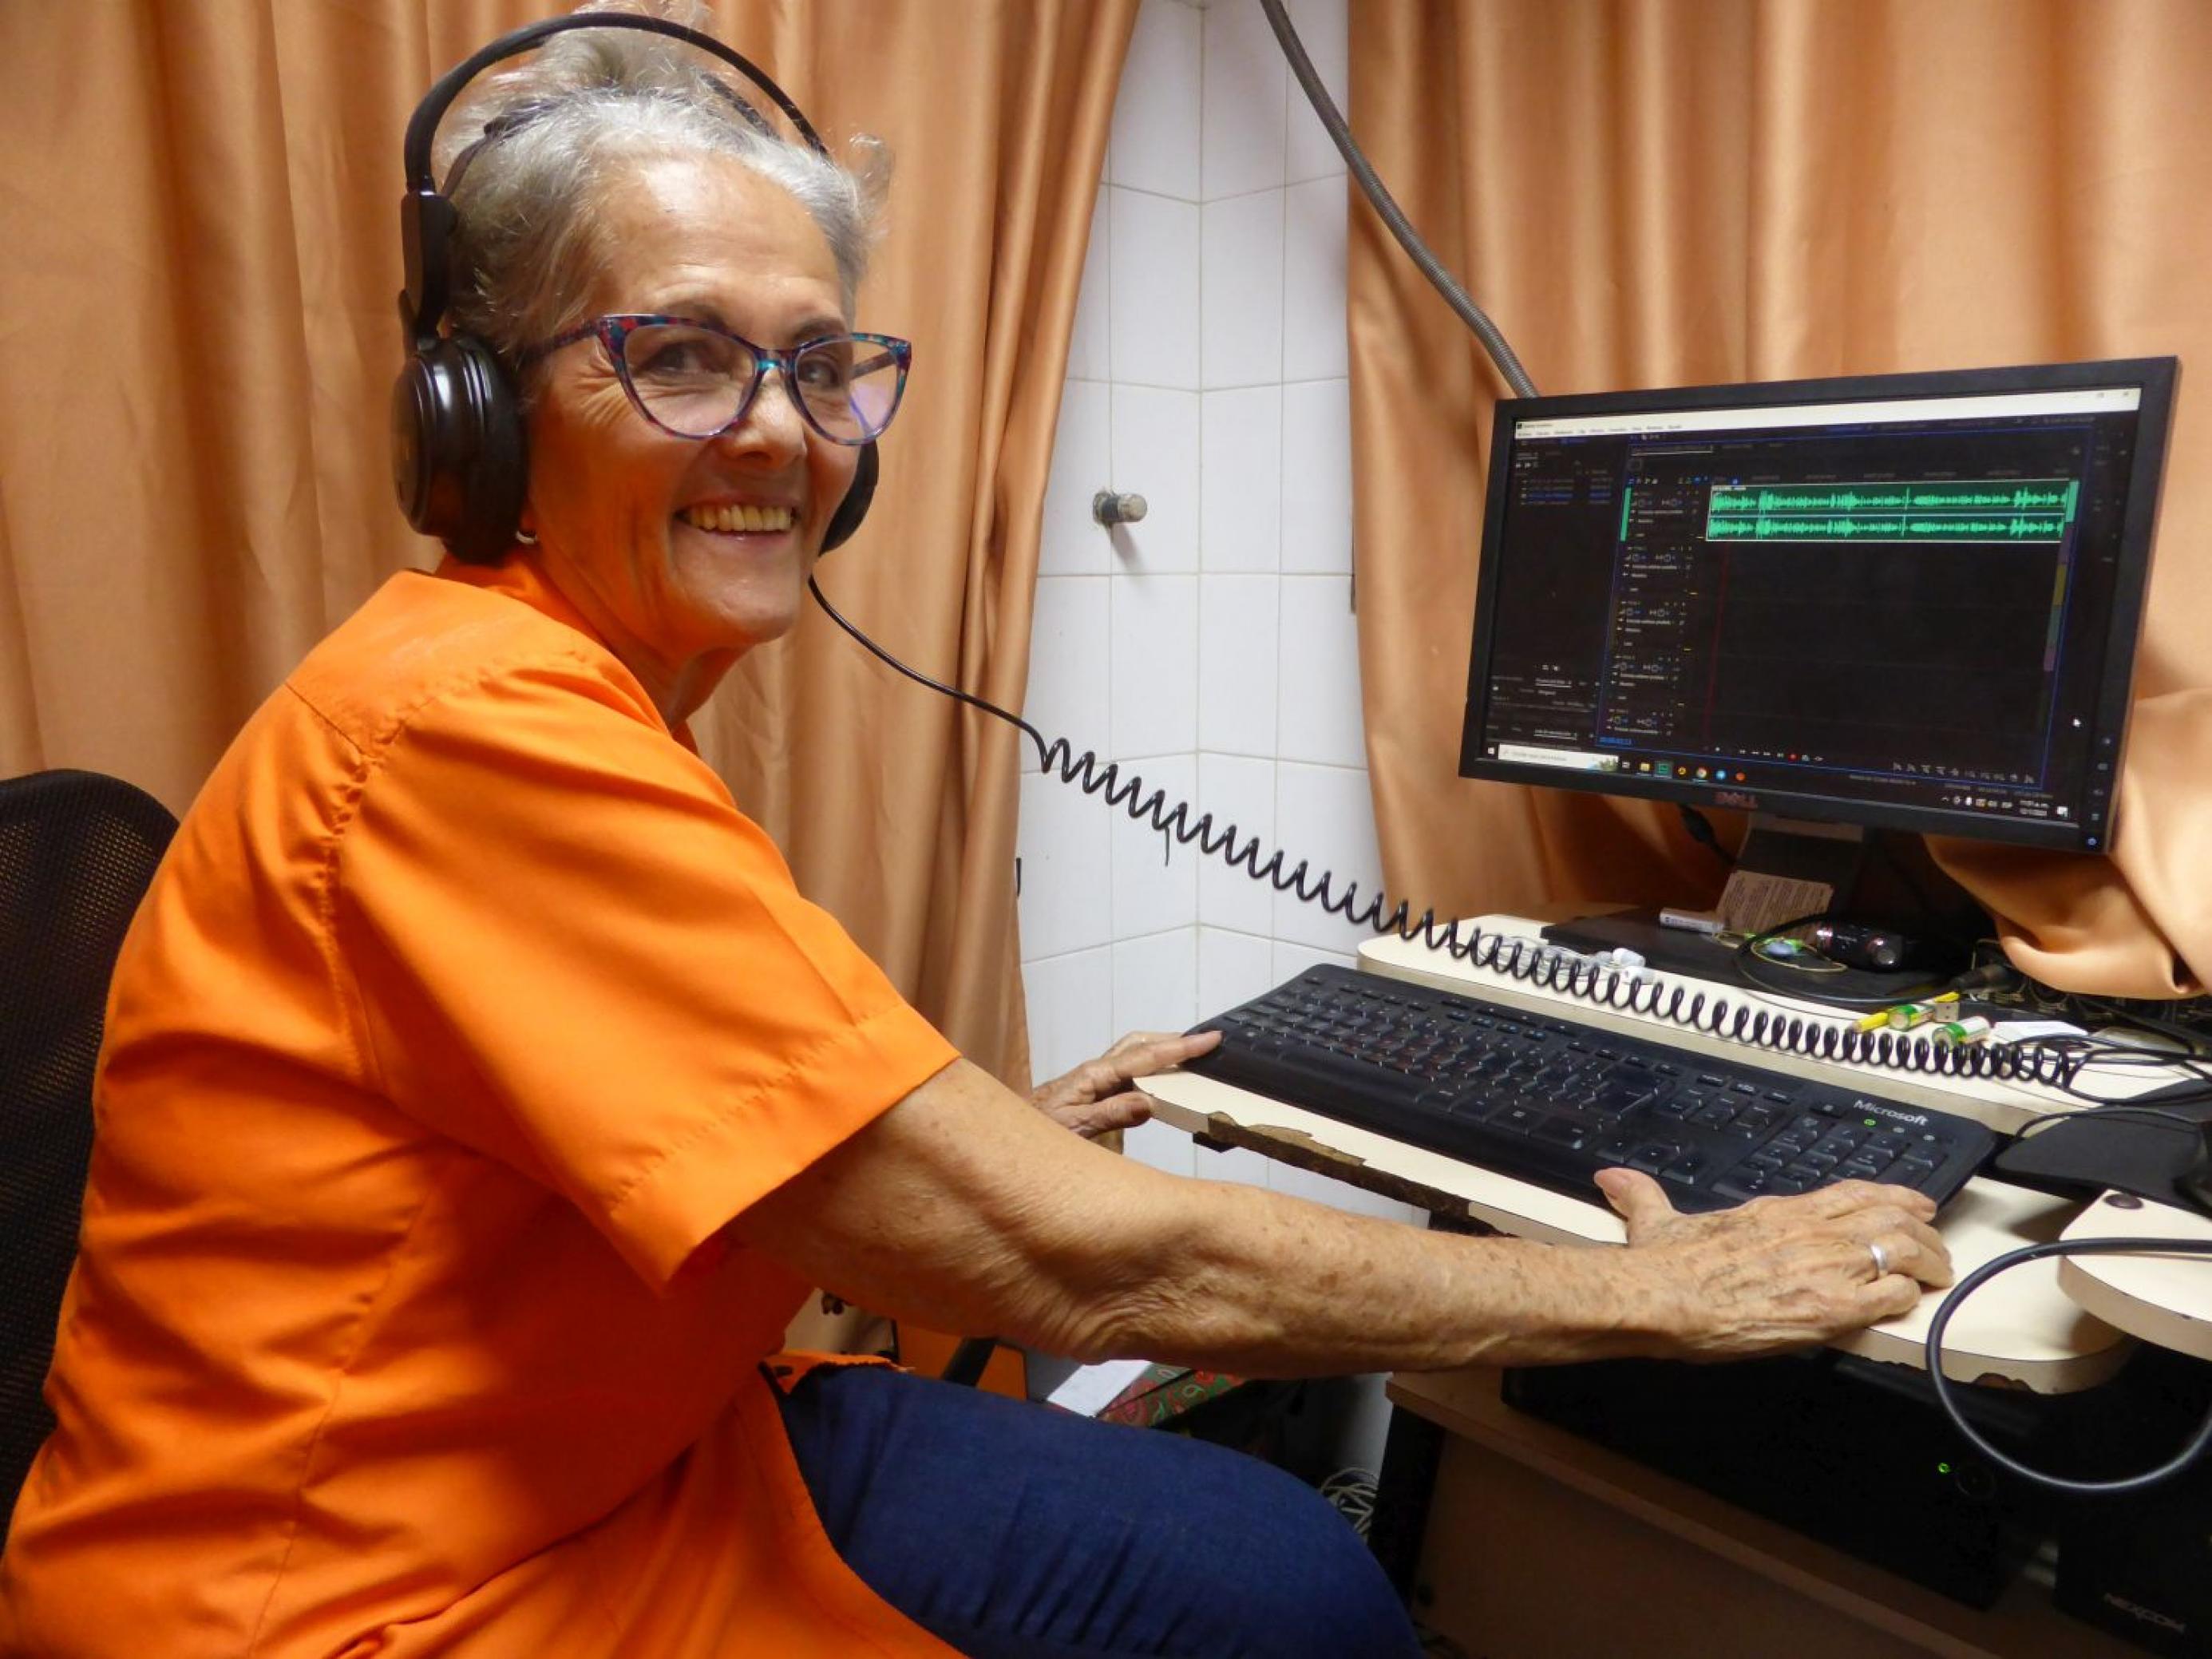 70-jährige Frau mit kurzen grauen Haaren, orangener Bluse, Kopfhörer vor einem PC sitzend, lacht in die Kamera.